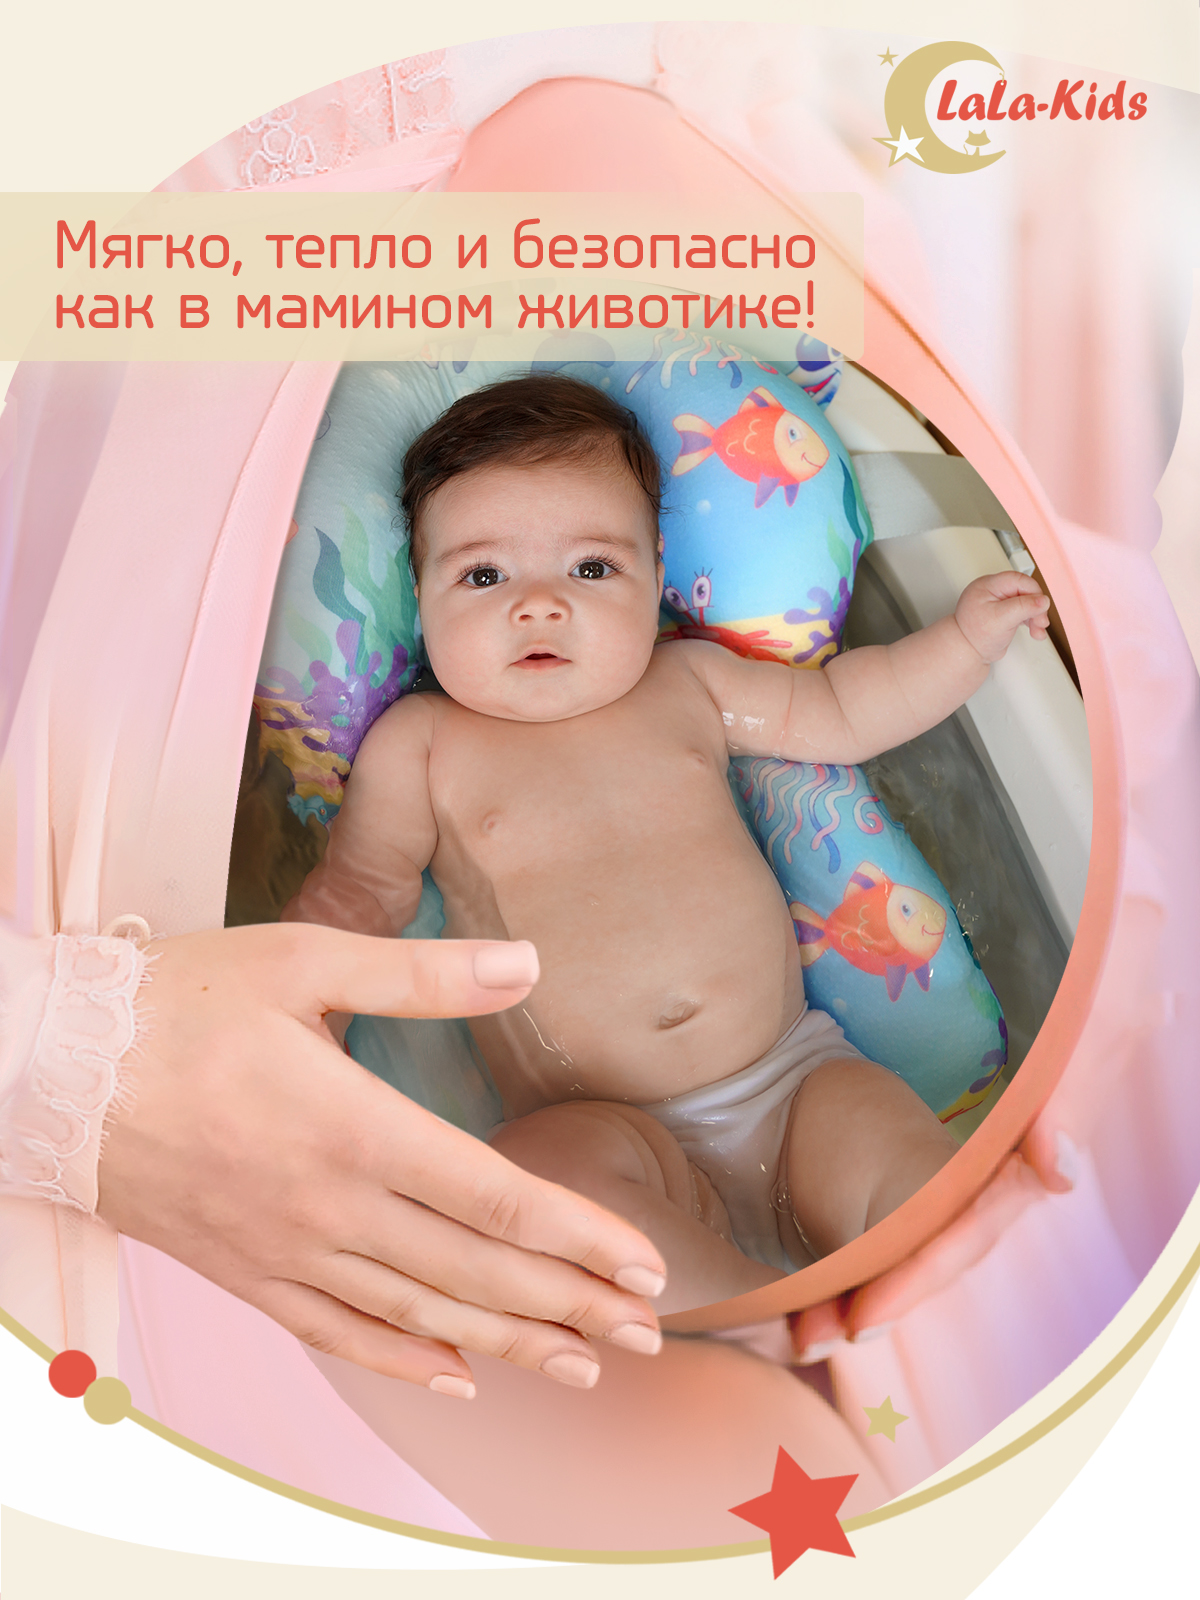 Ванночка для купания LaLa-Kids новорожденных складная с матрасиком и термометром - фото 13